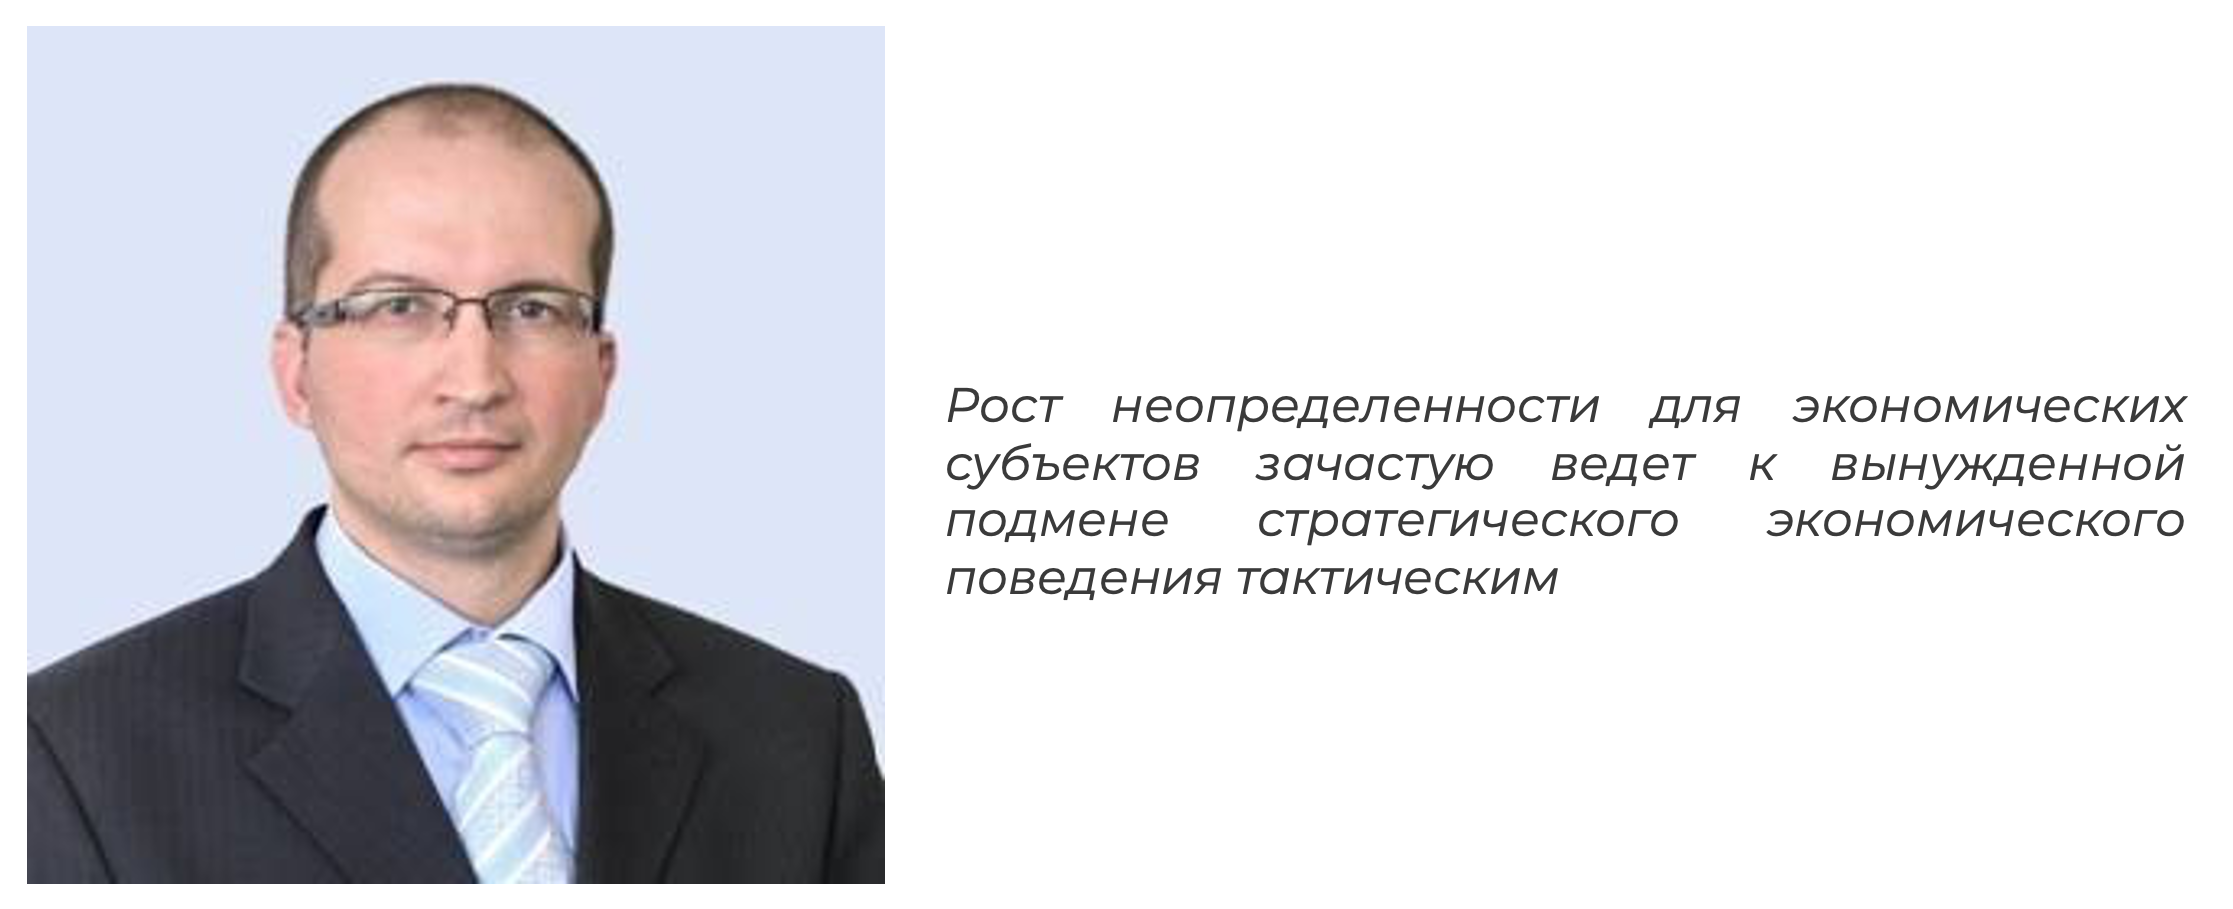 Маркелов Антон Юрьевич, доктор экономических наук, профессор ПИУ РАНХиГС